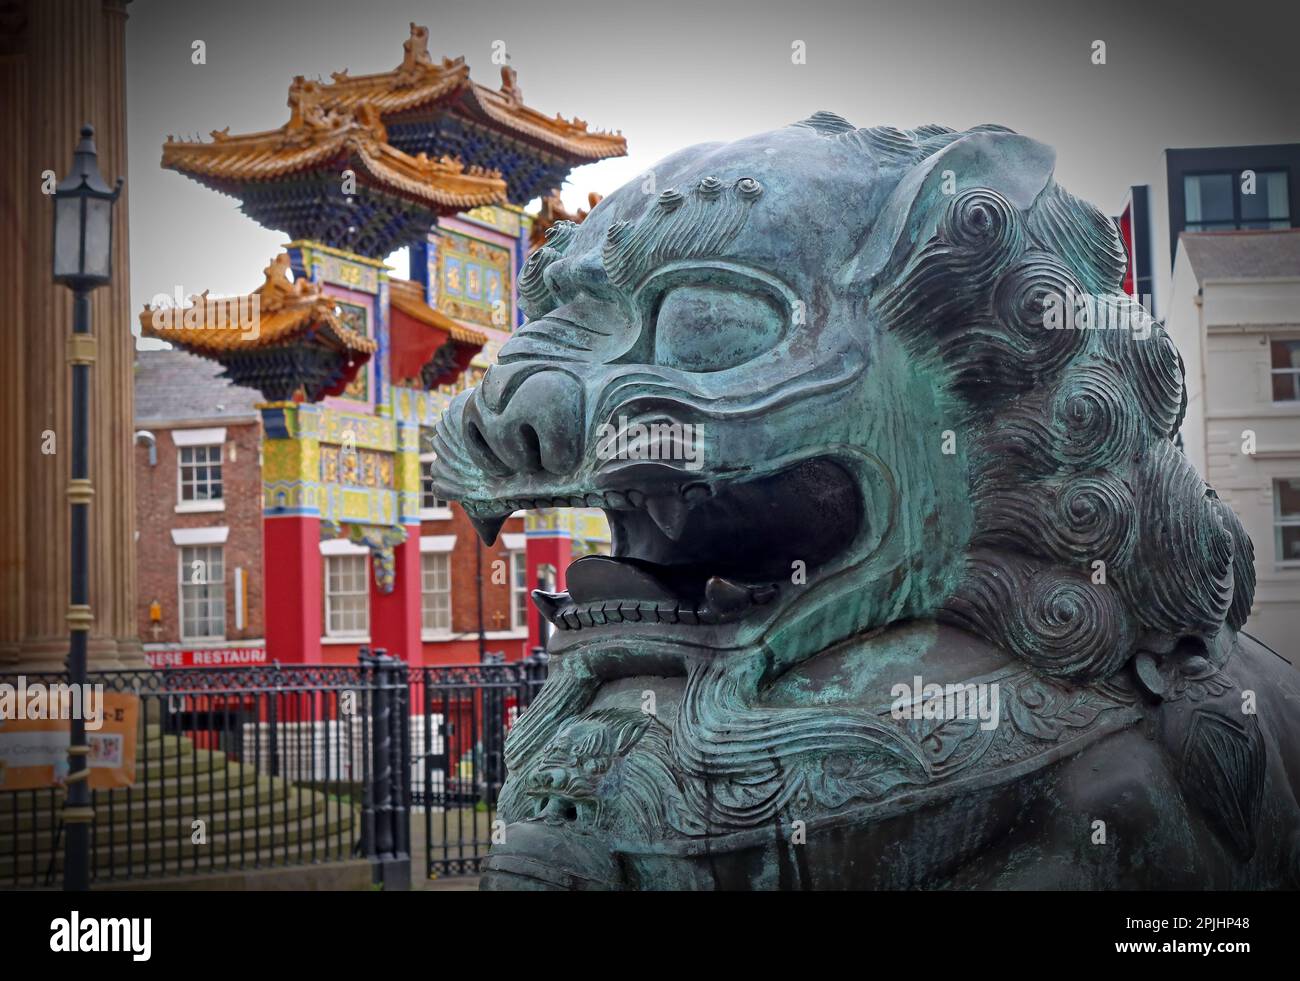 Lion de bronze du gardien chinois devant la porte du quartier chinois de Paifang, Nelson Street, Liverpool, Merseyside, Angleterre, ROYAUME-UNI, L1 5DN Banque D'Images